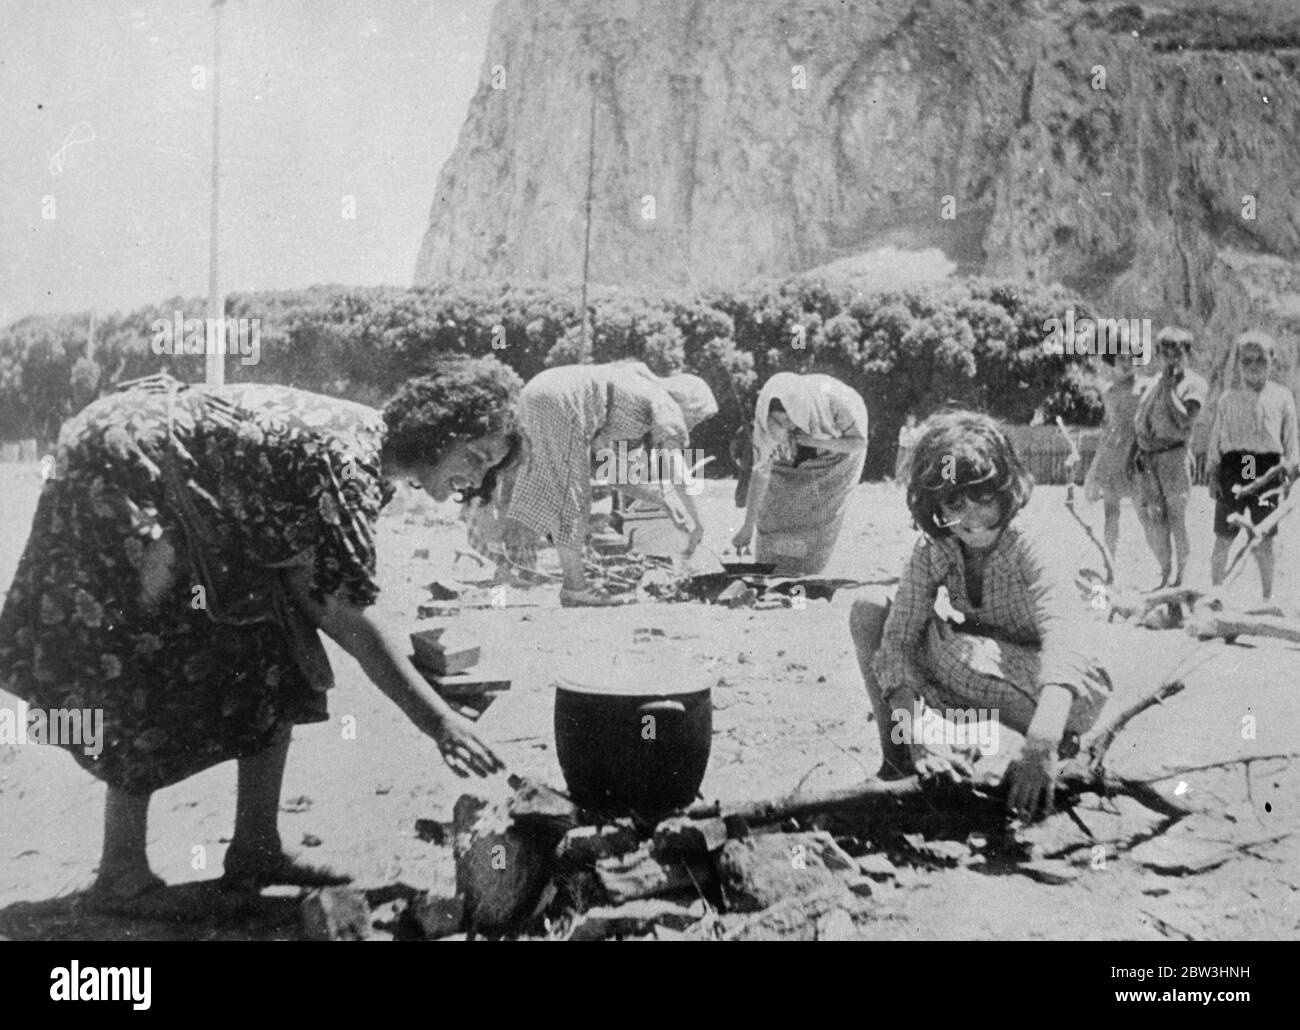 Spanische Flüchtlinge suchen Sicherheit in Gibraltar. Diese Bilder, die gerade in London aufgenommen wurden, wurden in einem speziellen Lager in Gibraltar für die Flüchtlinge, die Sicherheit am Felsen aus den Schrecken des spanischen Bürgerkriegs gesucht gegründet gemacht. Hunderte von spanischen und anderen Flüchtlingen, darunter viele Frauen und Kinder, flohen über die Grenze nach Gibraltar. Foto zeigt: Spanische Flüchtlinge bereiten Essen im Lager Gibraltar vor. 29 Juli 1936 Stockfoto